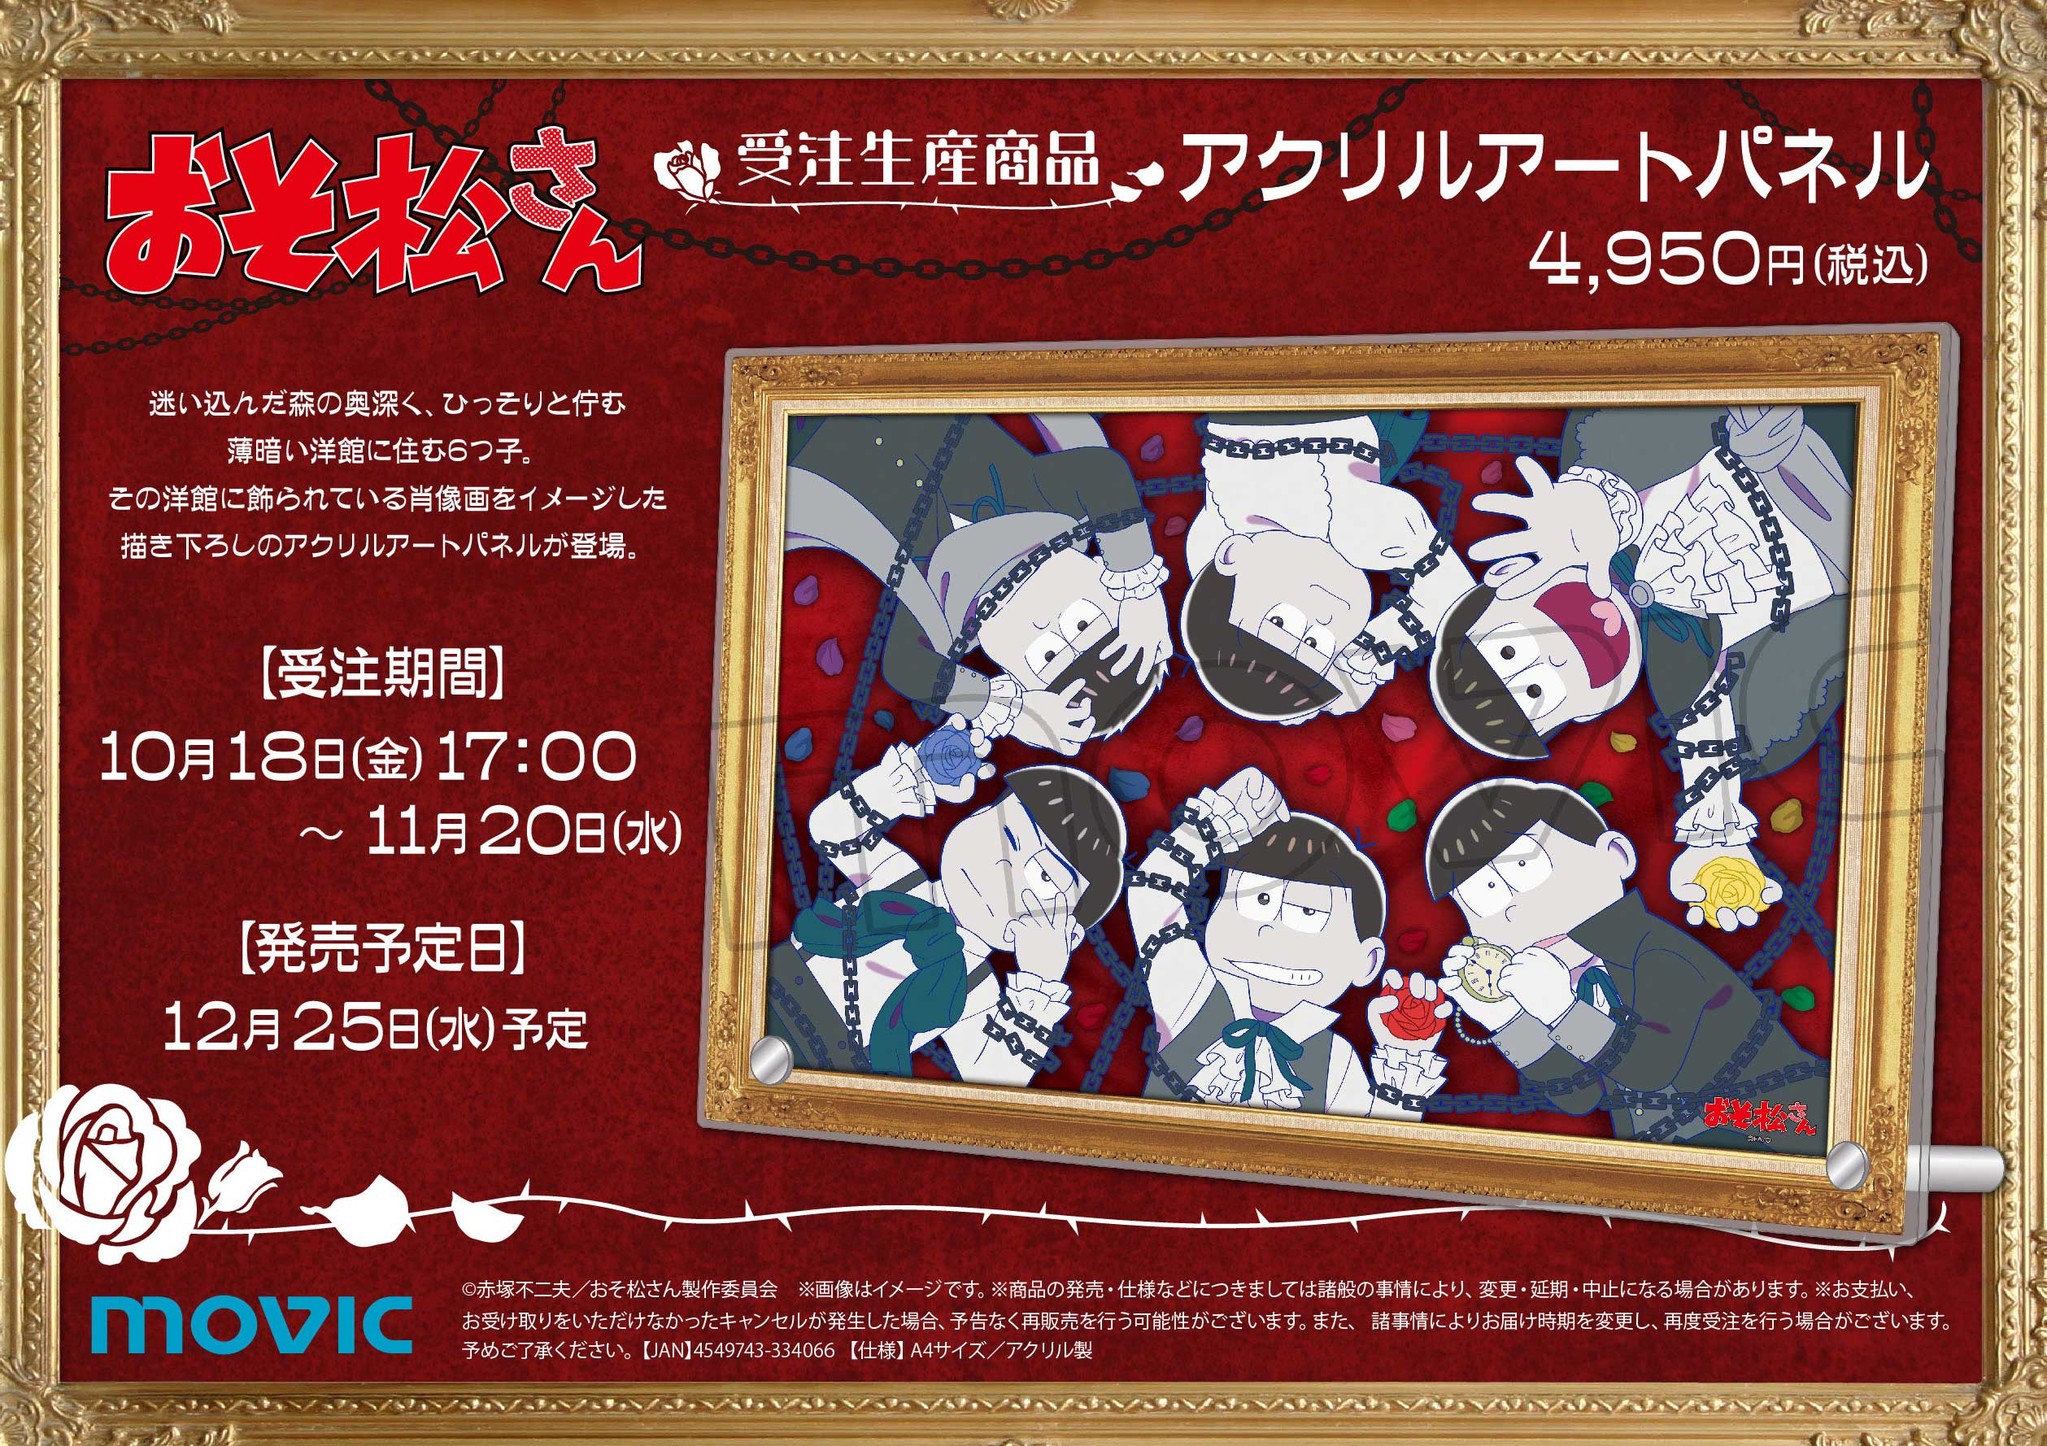 Tvアニメ おそ松さん より 描き下ろしイラストを使用したアクリルアートパネルが受注生産にて登場 株式会社アニメイトホールディングスのプレスリリース